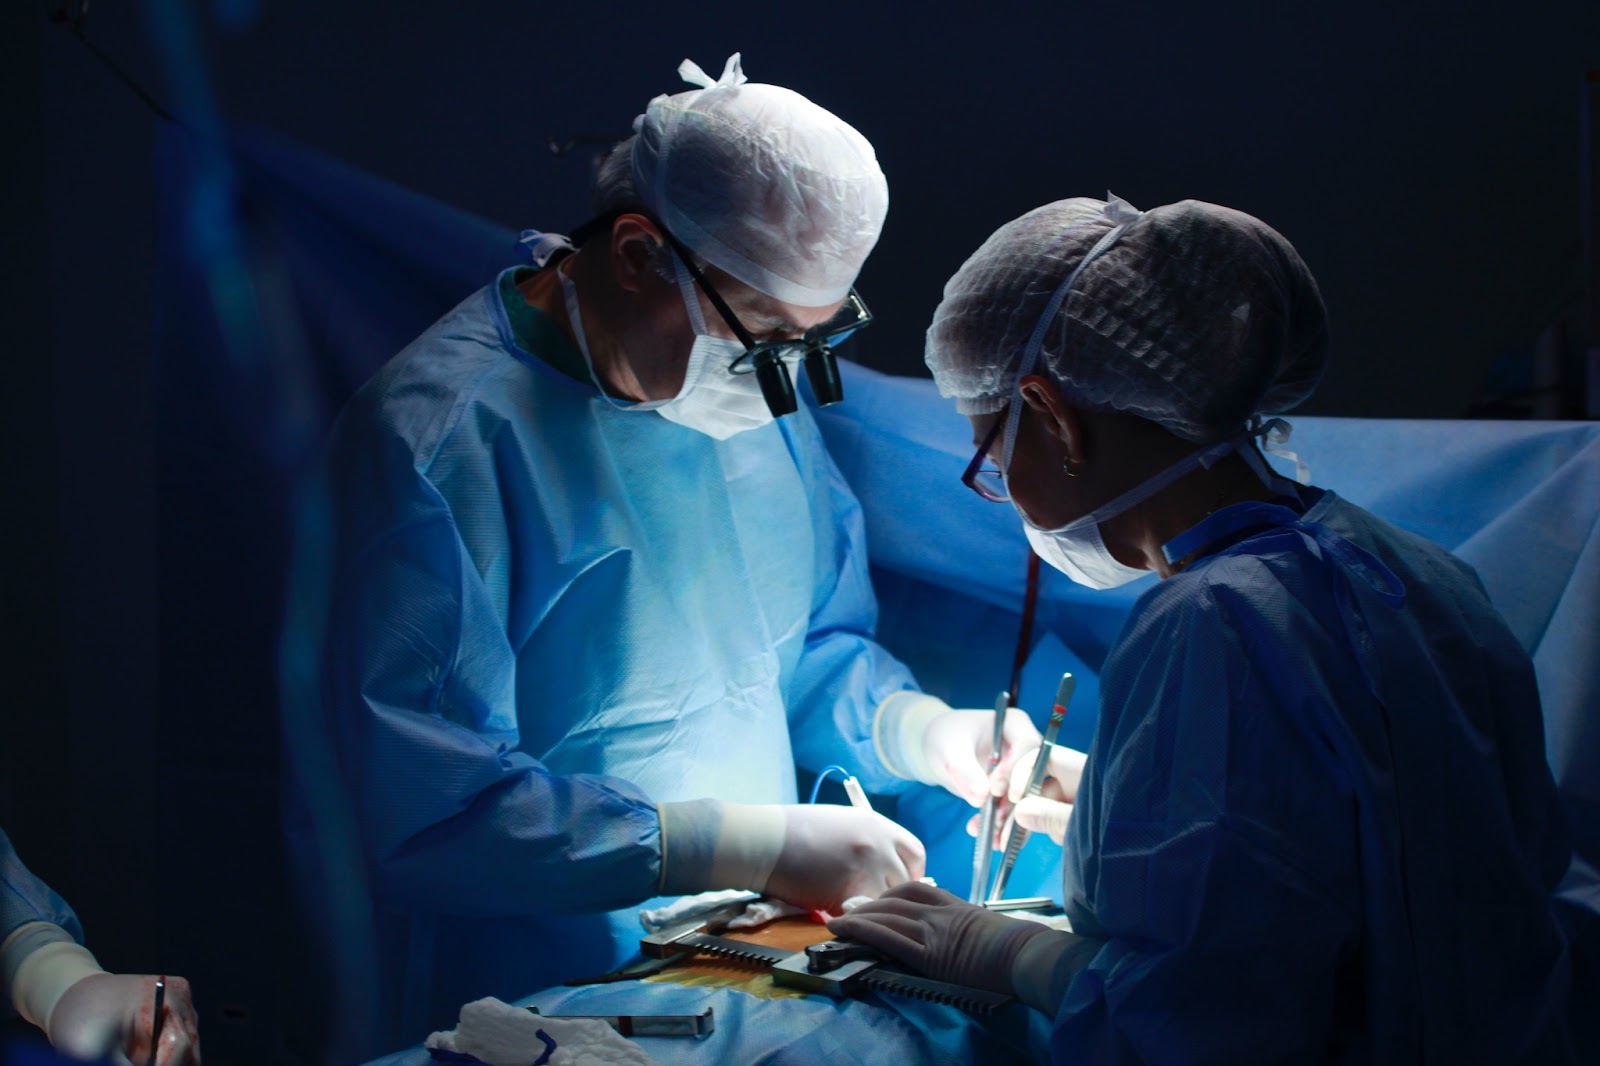 dos doctores realizan una intervención quirúrgica ante el miedo de cometer una negligencia médica